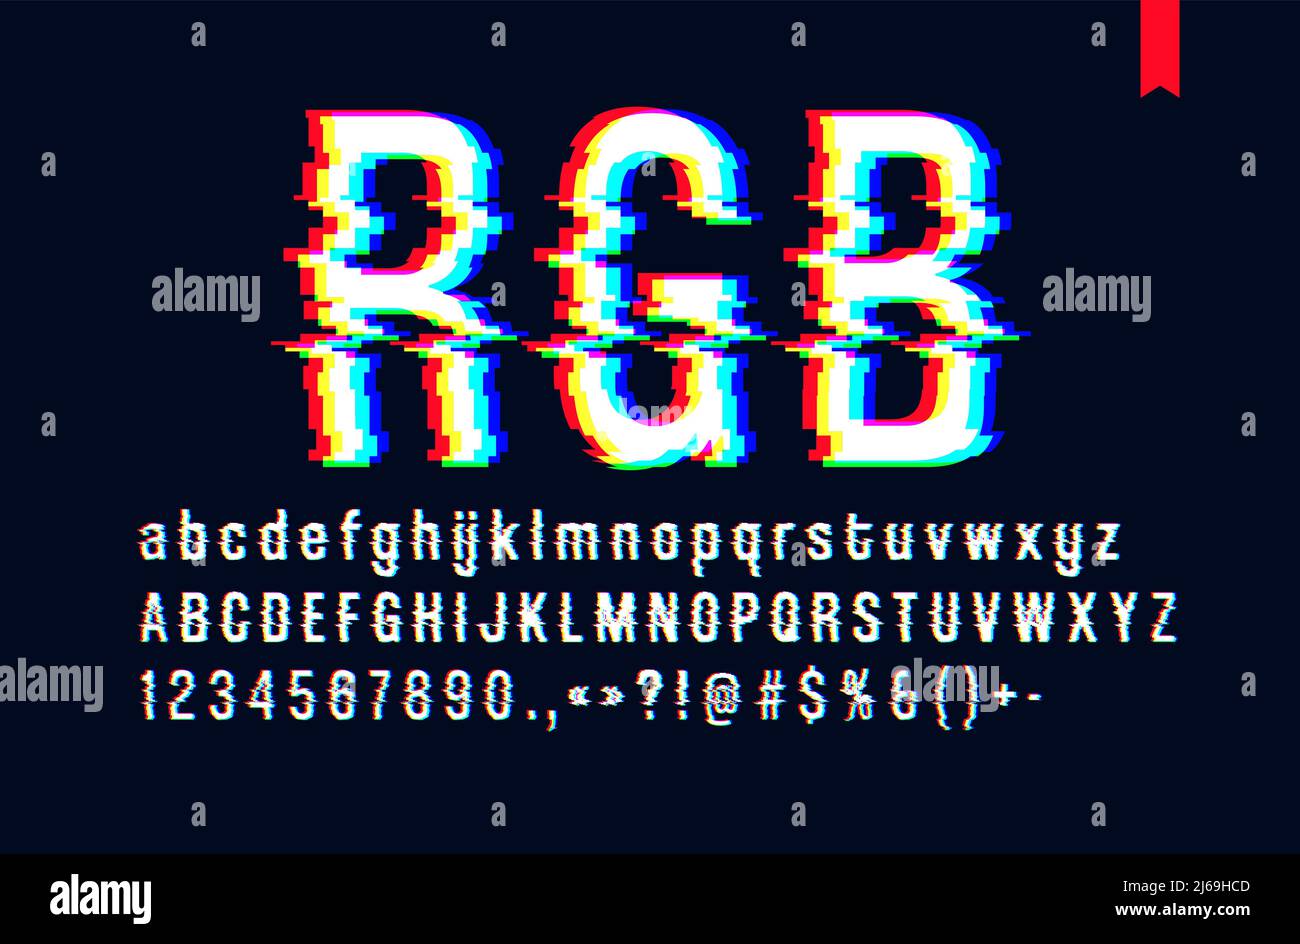 Moderne Schriftart mit verzerrtem Glitch, die einen roten und blauen Kanalfehler, Groß- und Kleinbuchstaben vermischt, nur für einen dunklen Hintergrund Stock Vektor